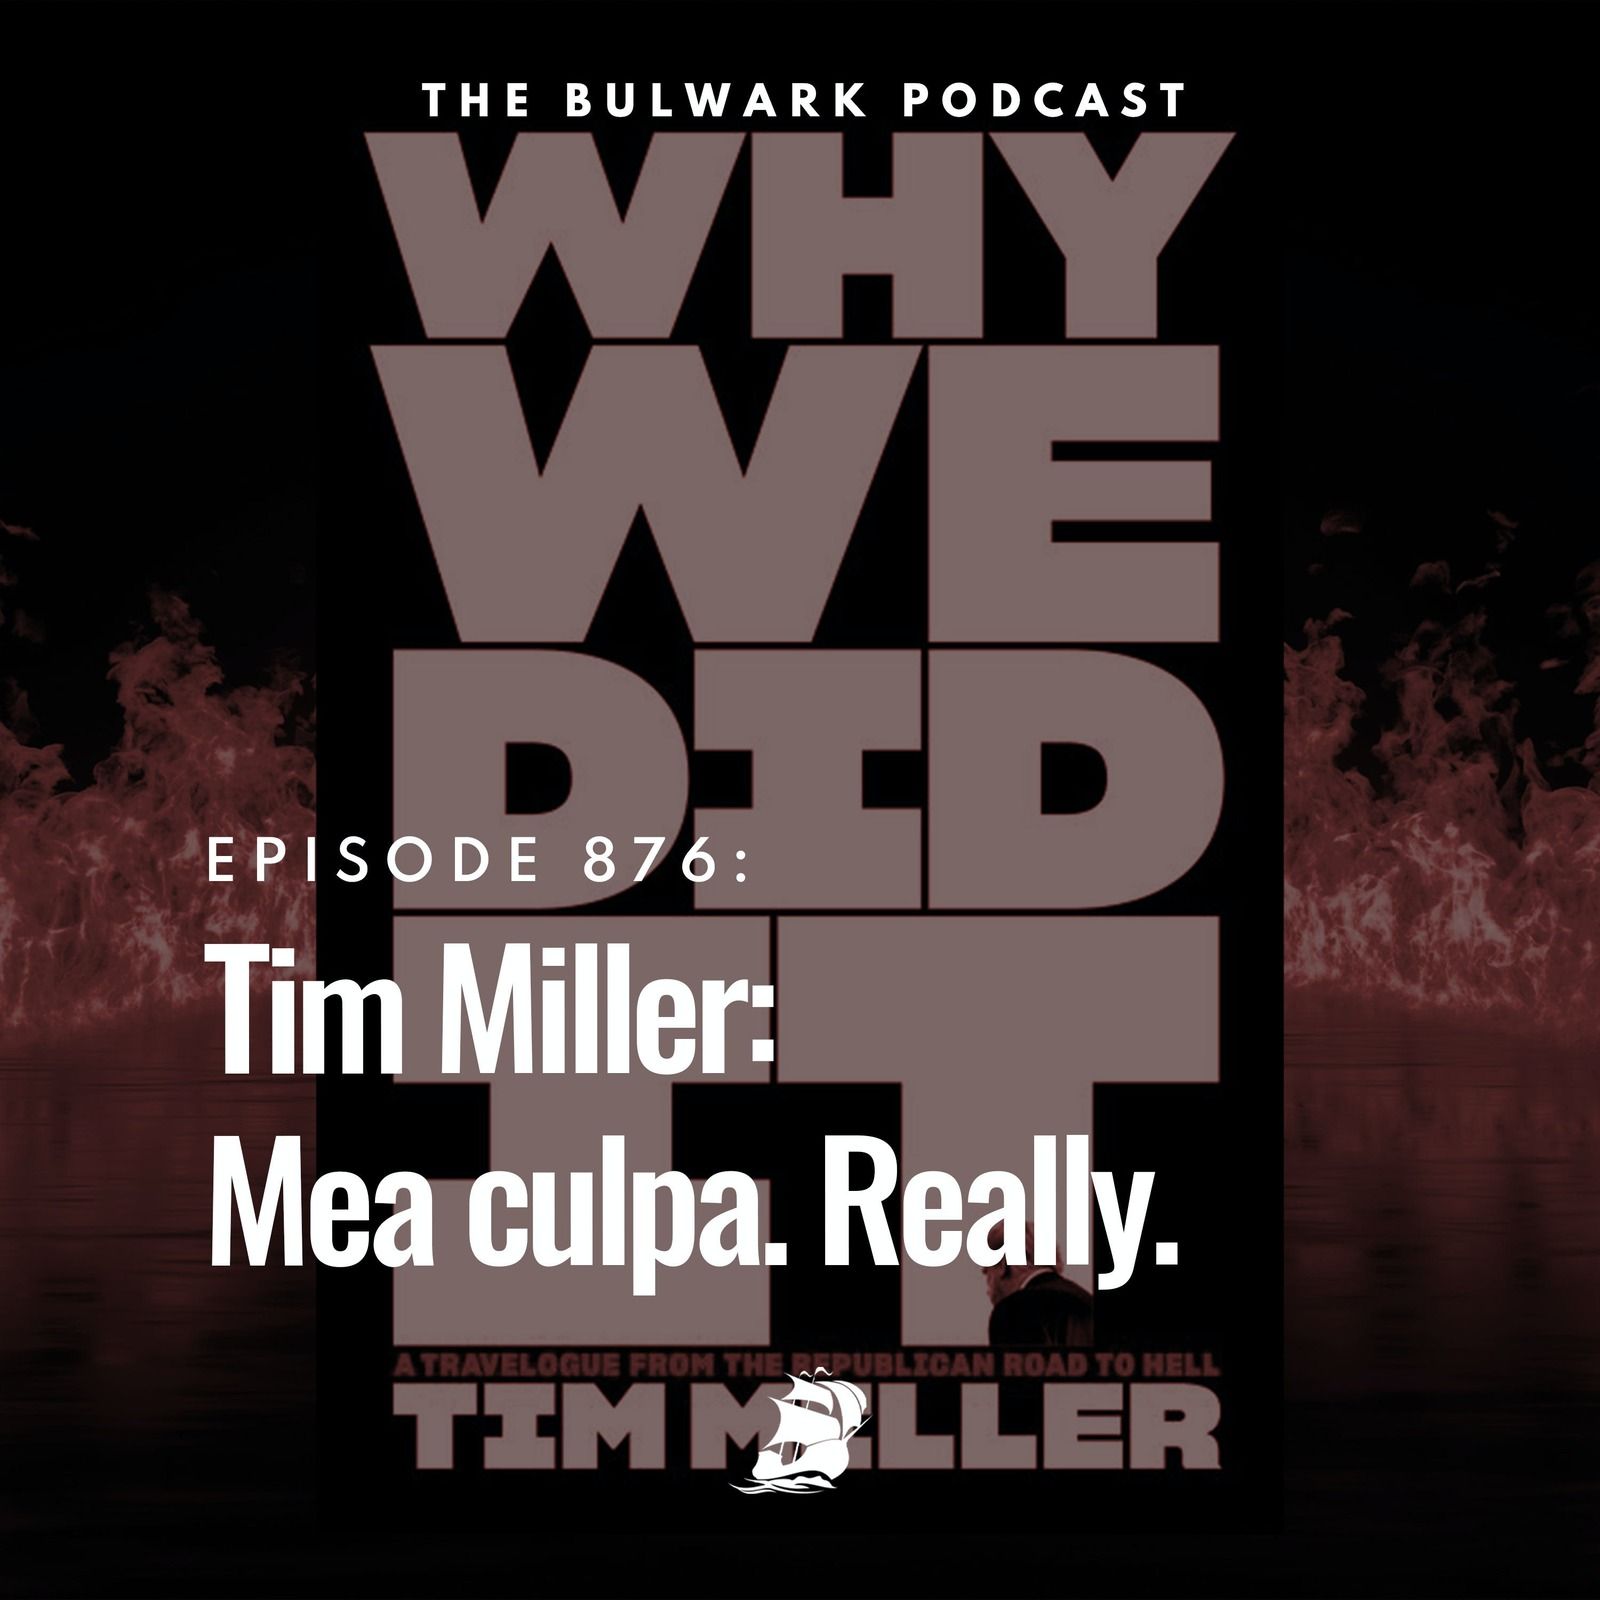 Tim Miller: Mea culpa. Really. by The Bulwark Podcast